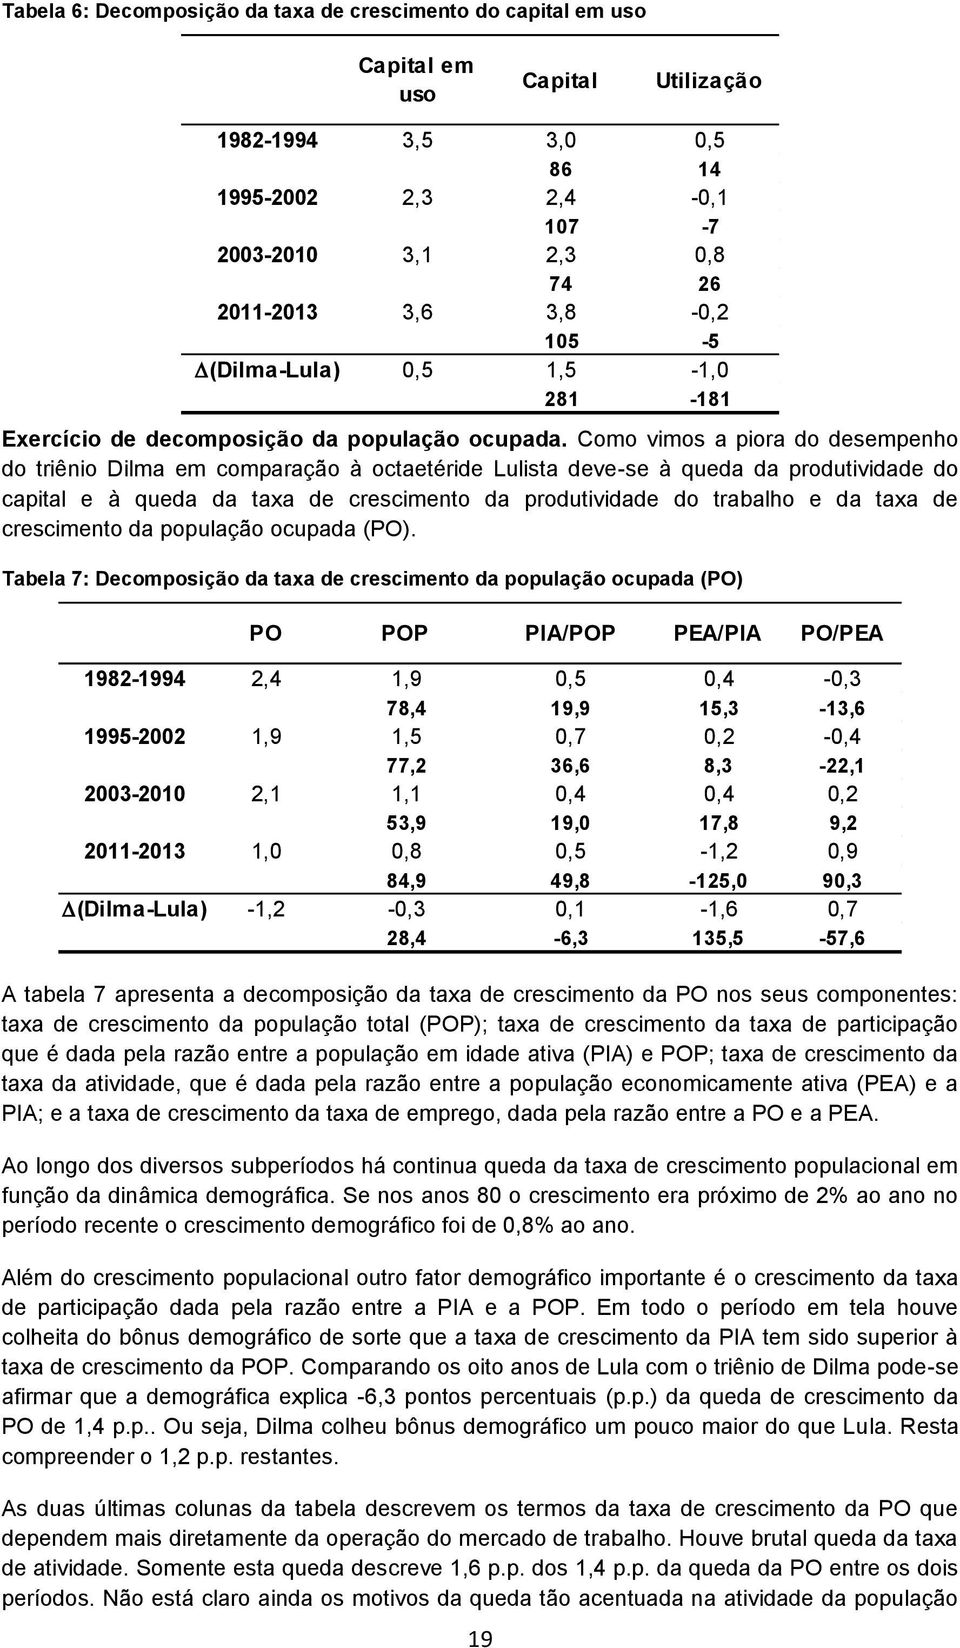 Como vimos a piora do desempenho do triênio Dilma em comparação à octaetéride Lulista deve-se à queda da produtividade do capital e à queda da taxa de crescimento da produtividade do trabalho e da